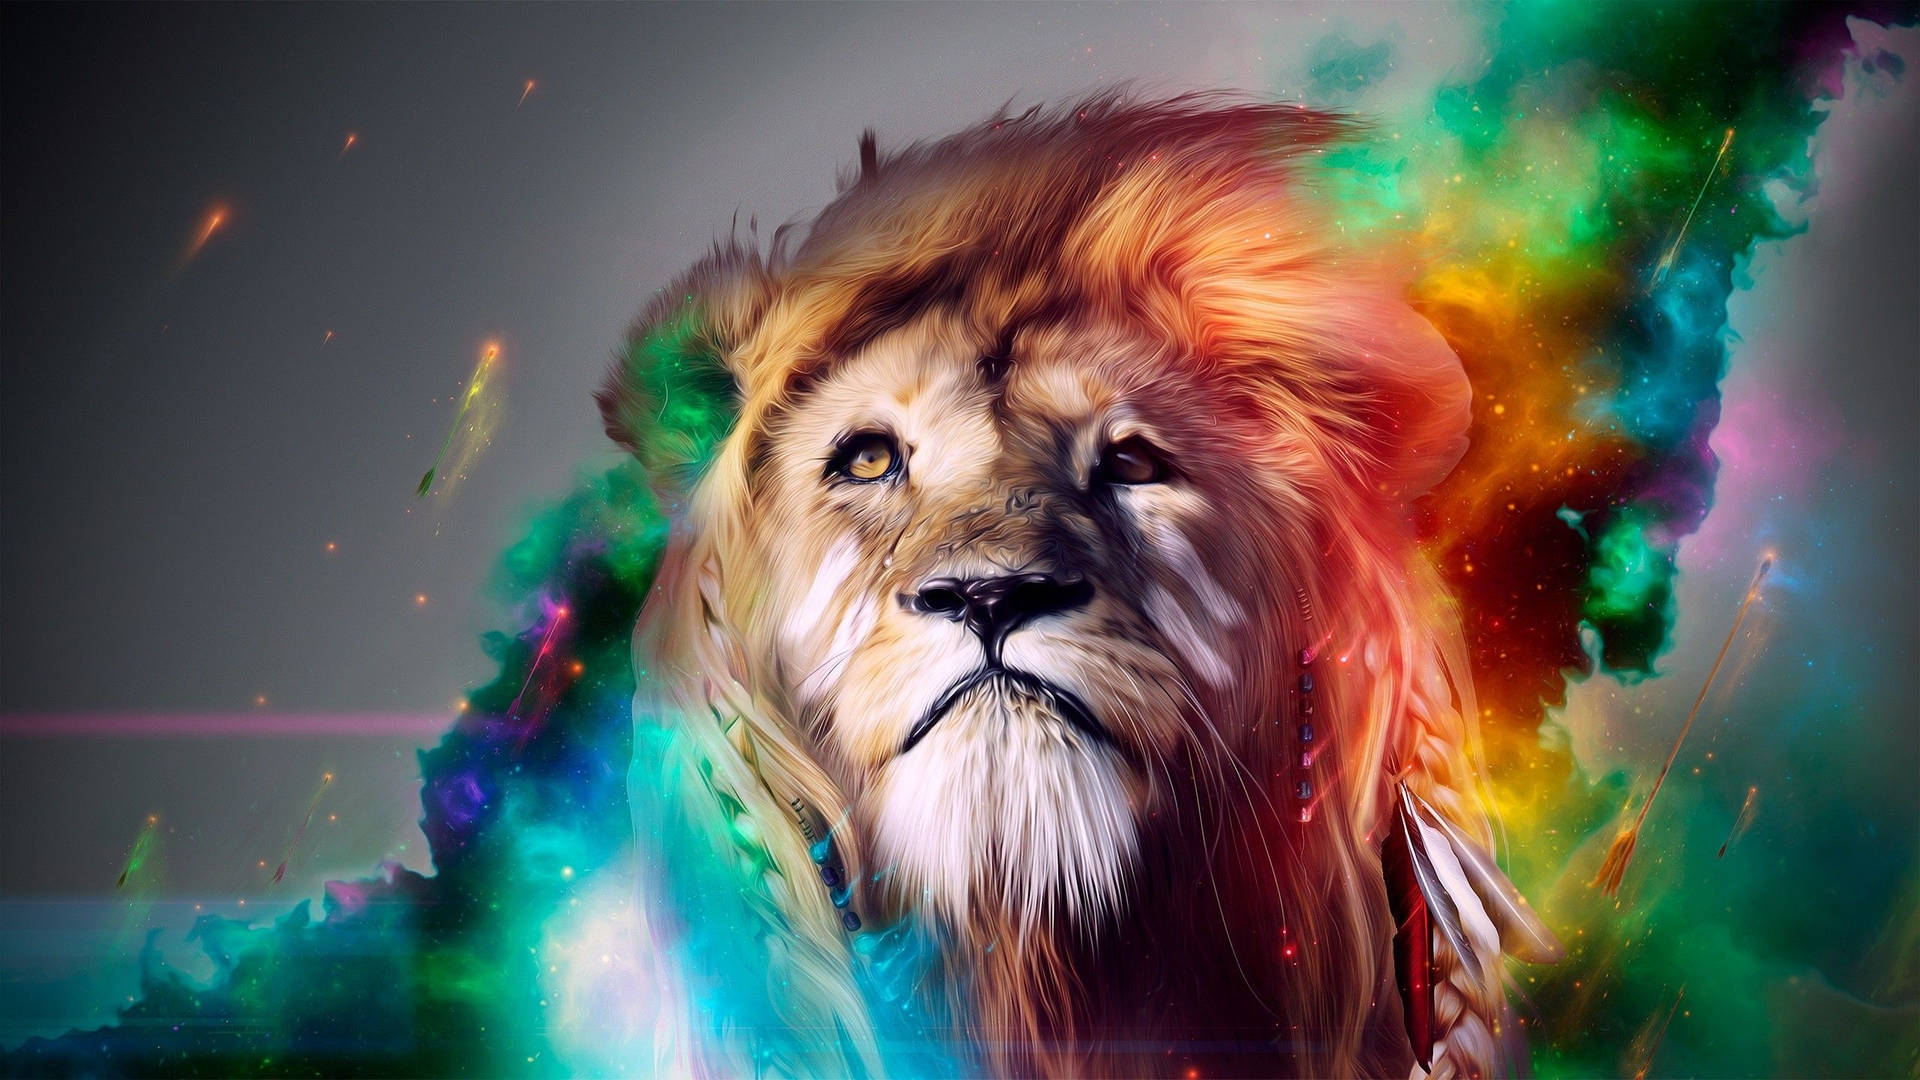 Cool Lion Bilder